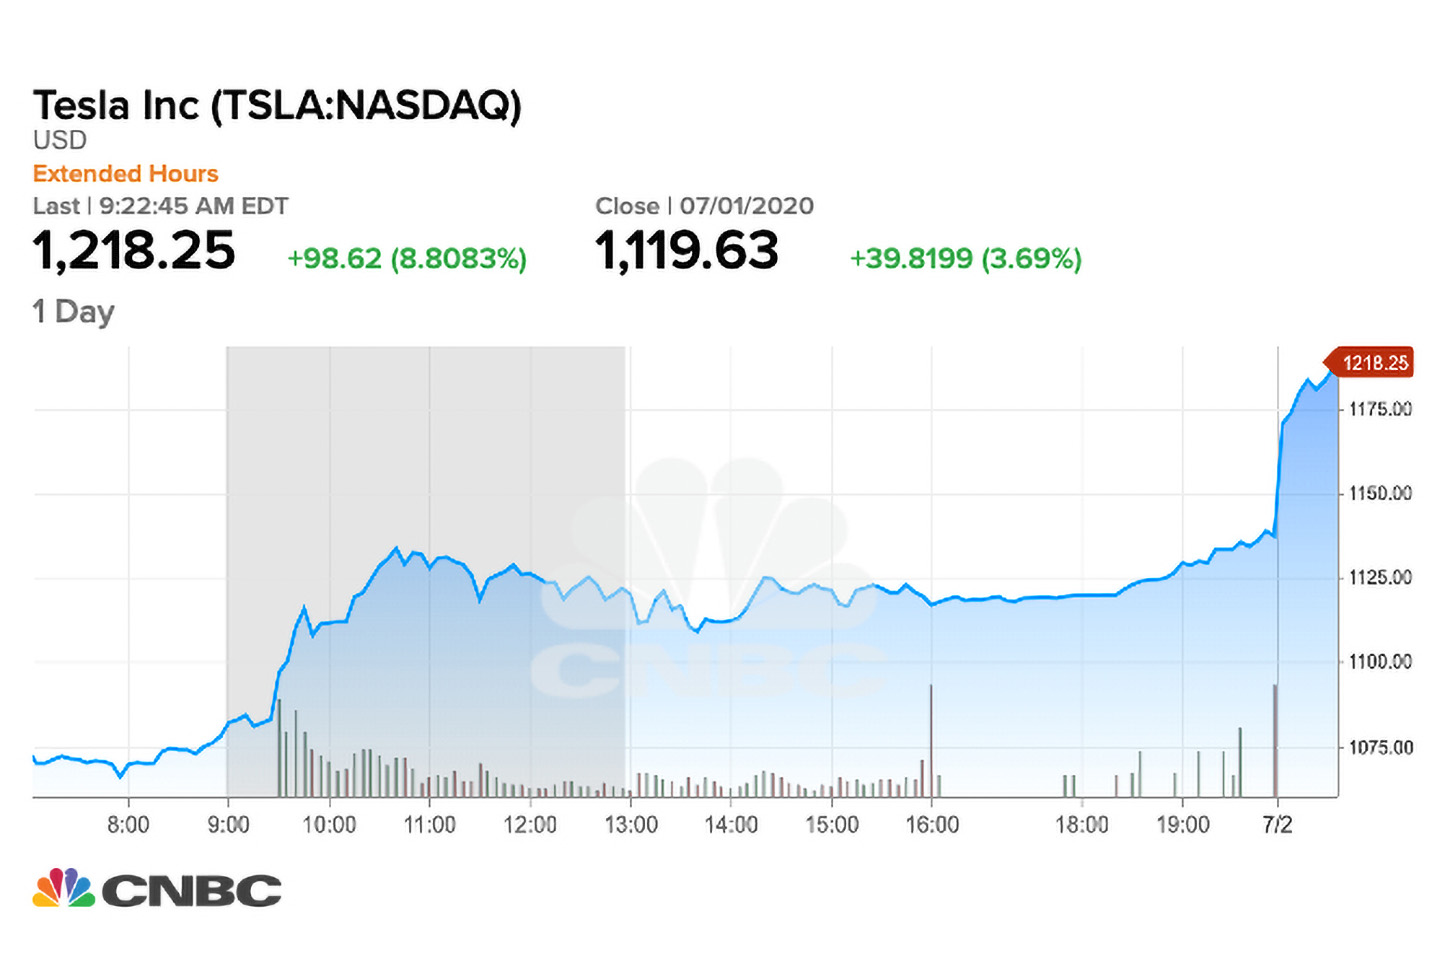 Las acciones de Tesla superan los USD 1,200, lo que ahora constituye un